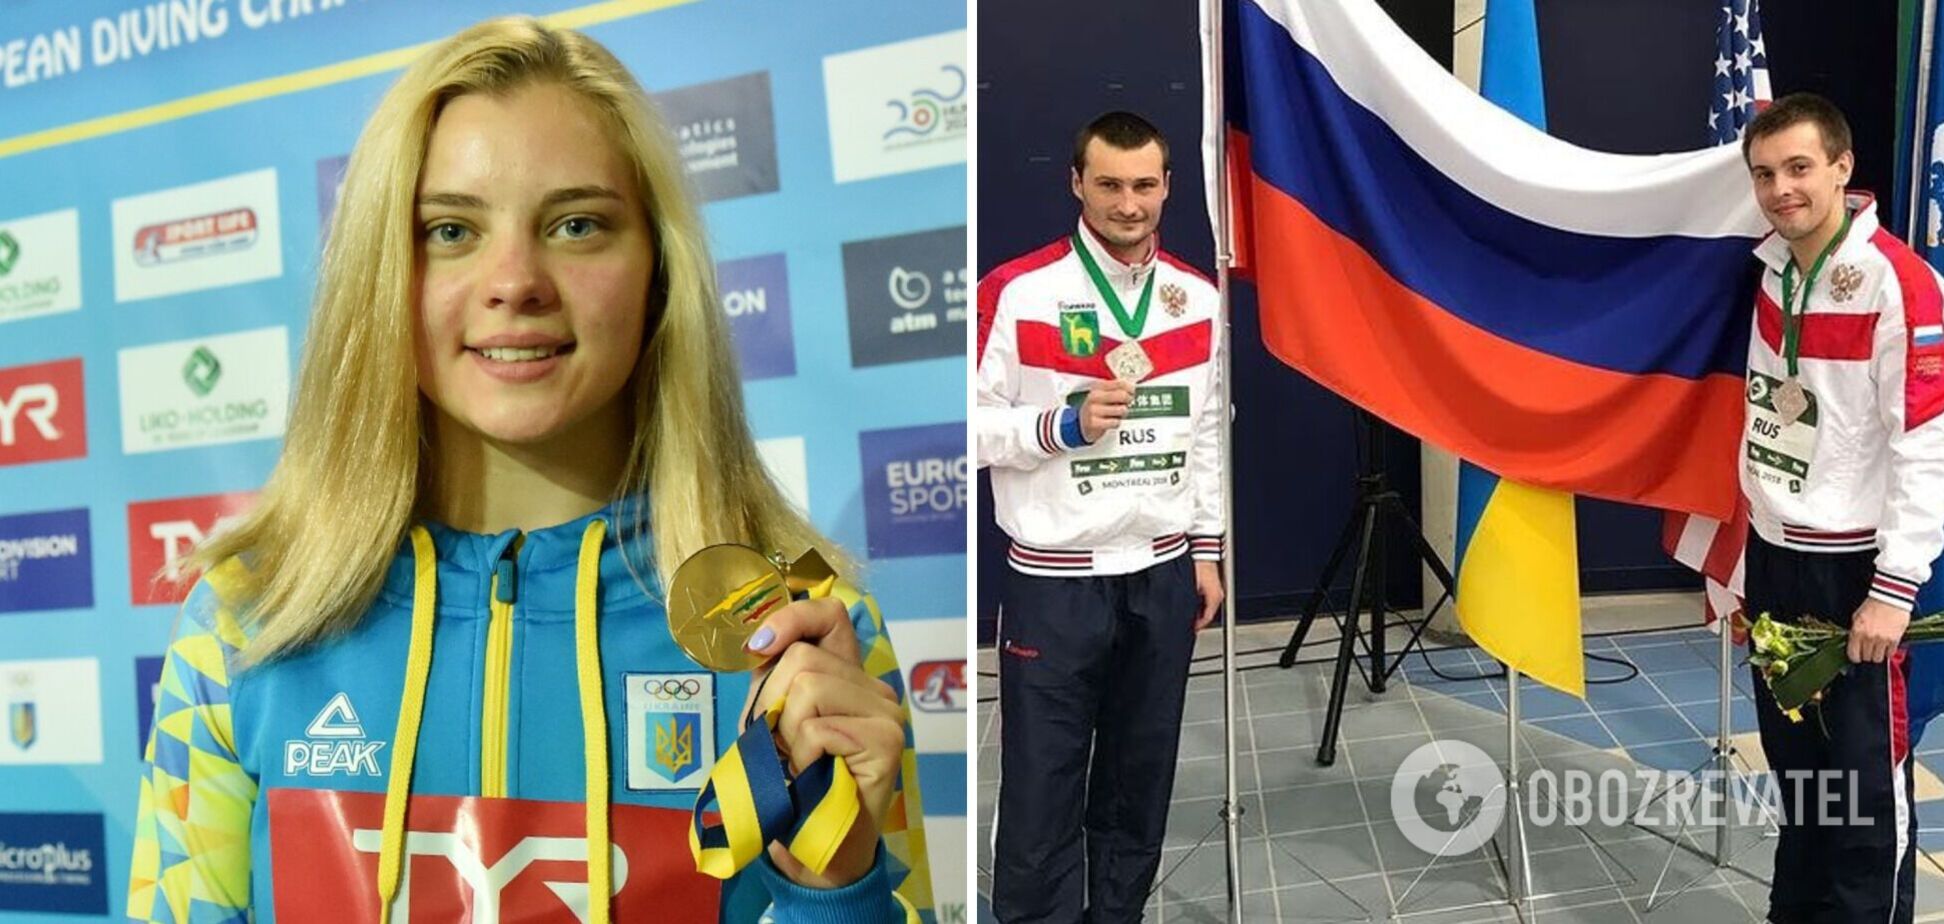 'Россиян всегда все недолюбливали': чемпионка Европы рассказала, что без прыгунов РФ на соревнованиях стало легче